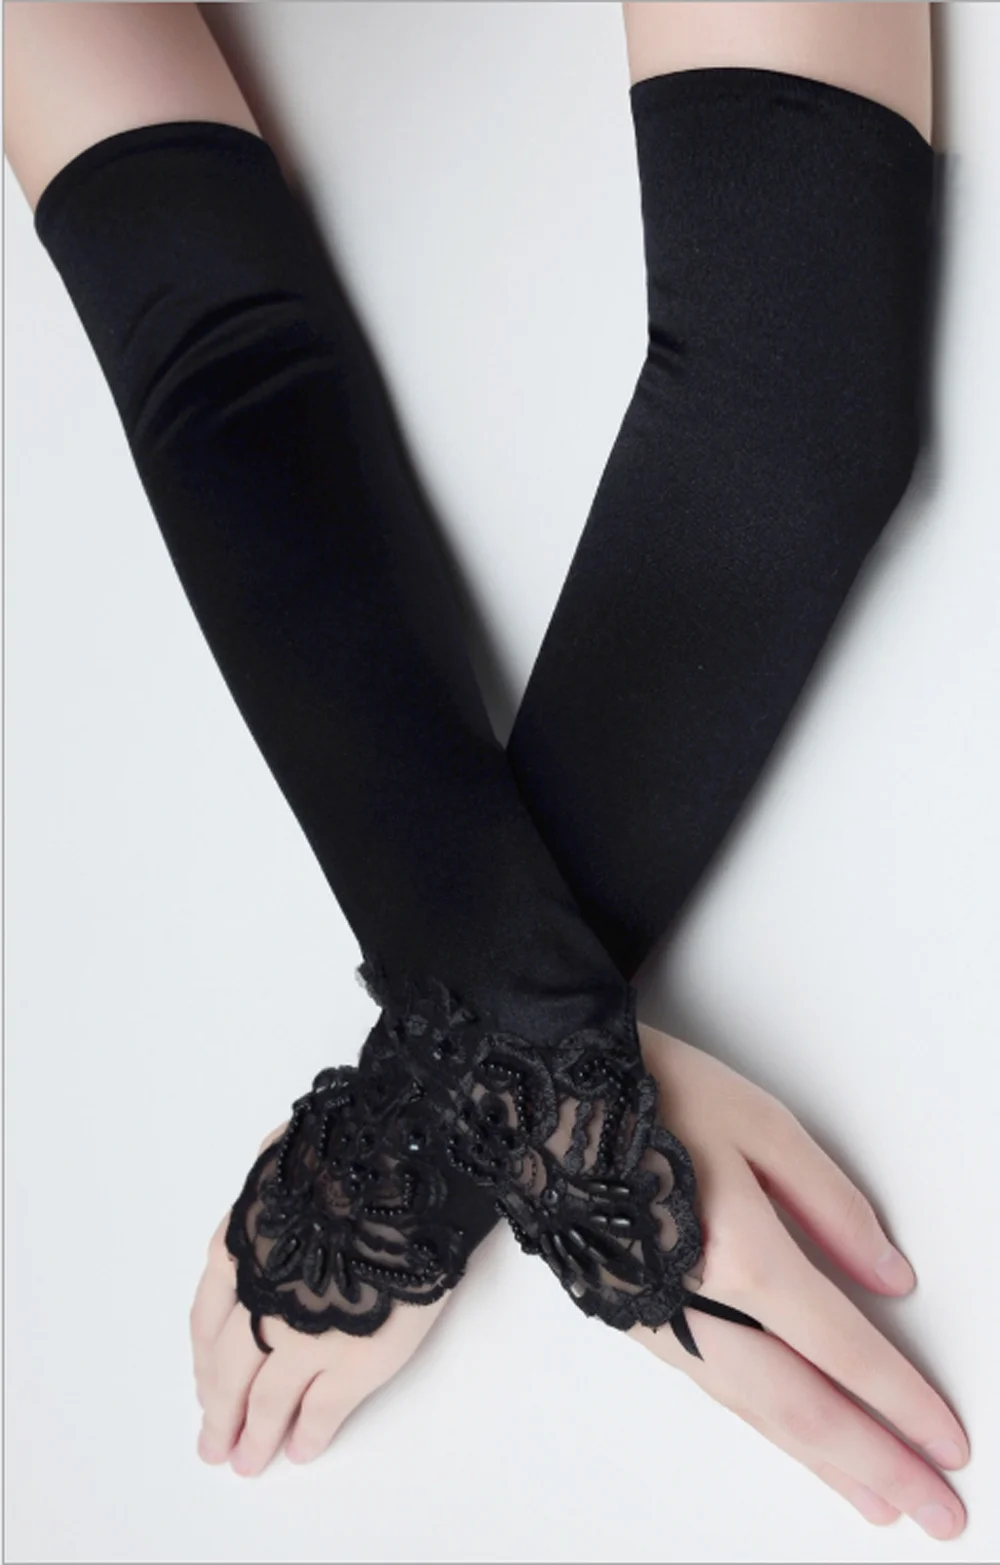 Goocheer/1 пара, женские модные кружевные перчатки для невесты, кружевные перчатки без пальцев, черные белые длинные стильные перчатки